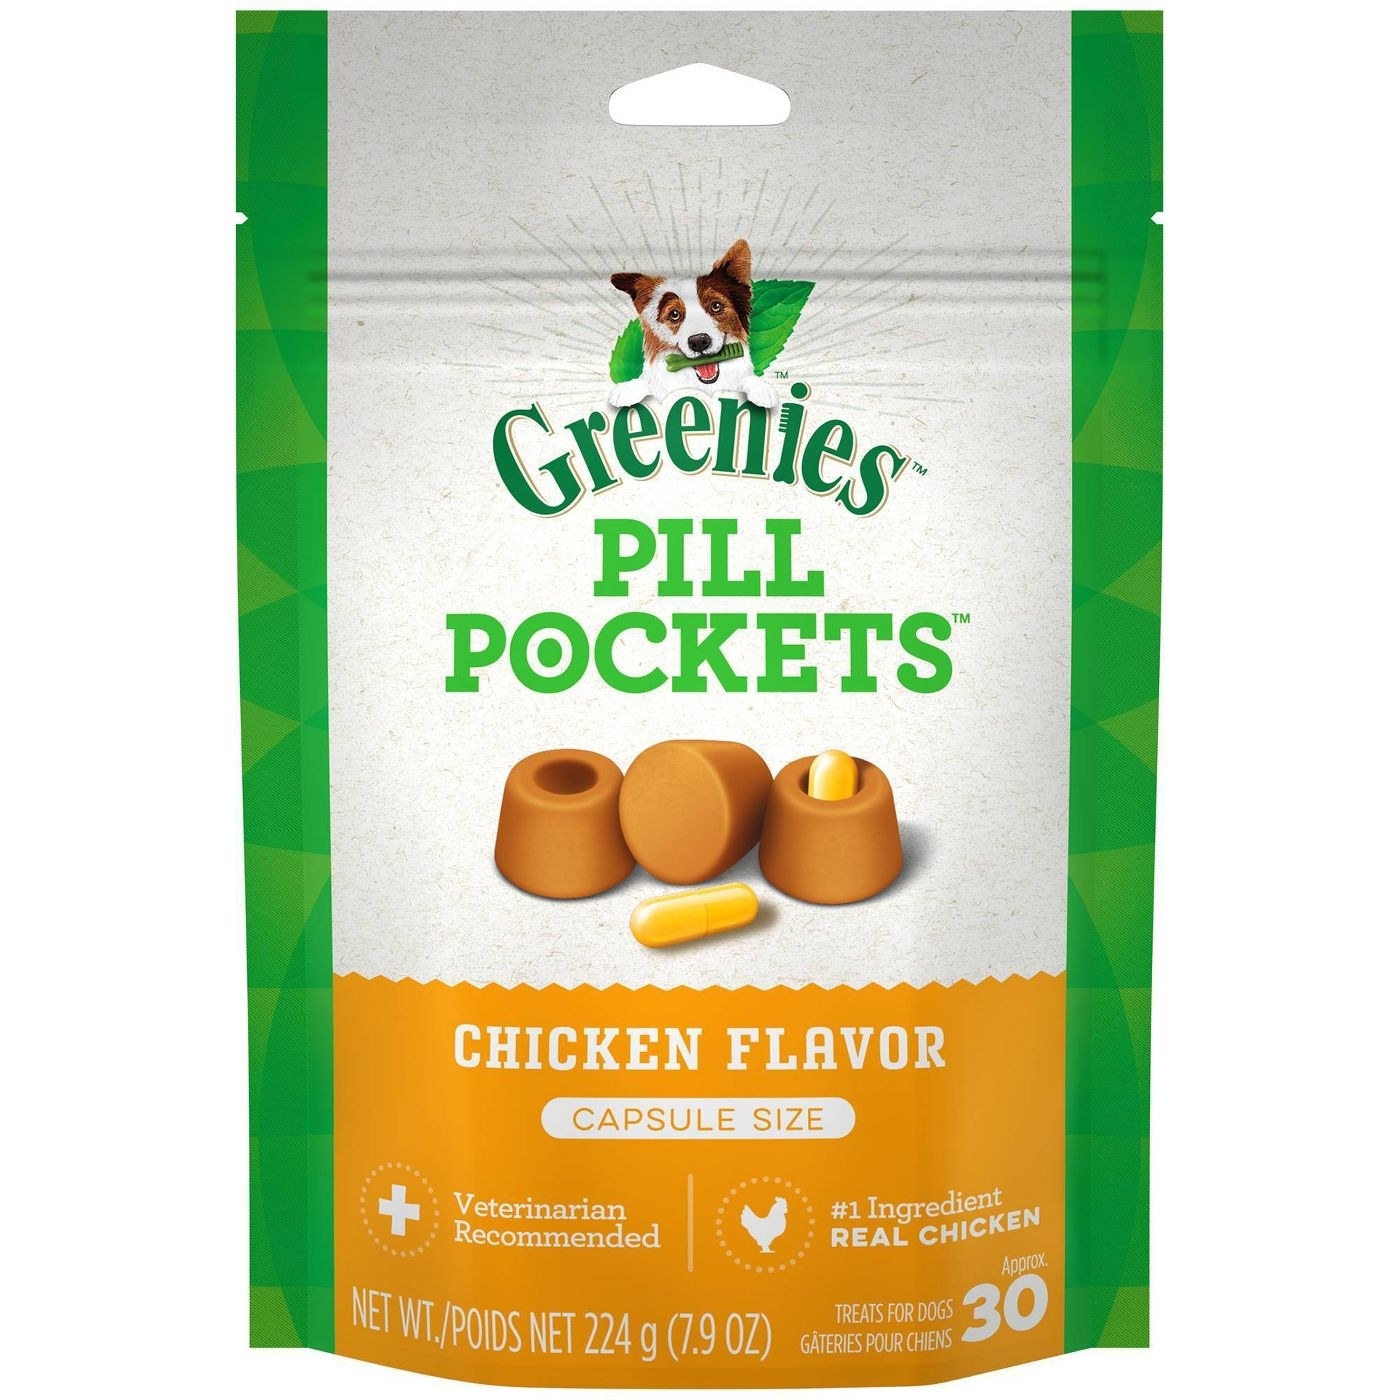 Bag of chicken flavor pill pockets